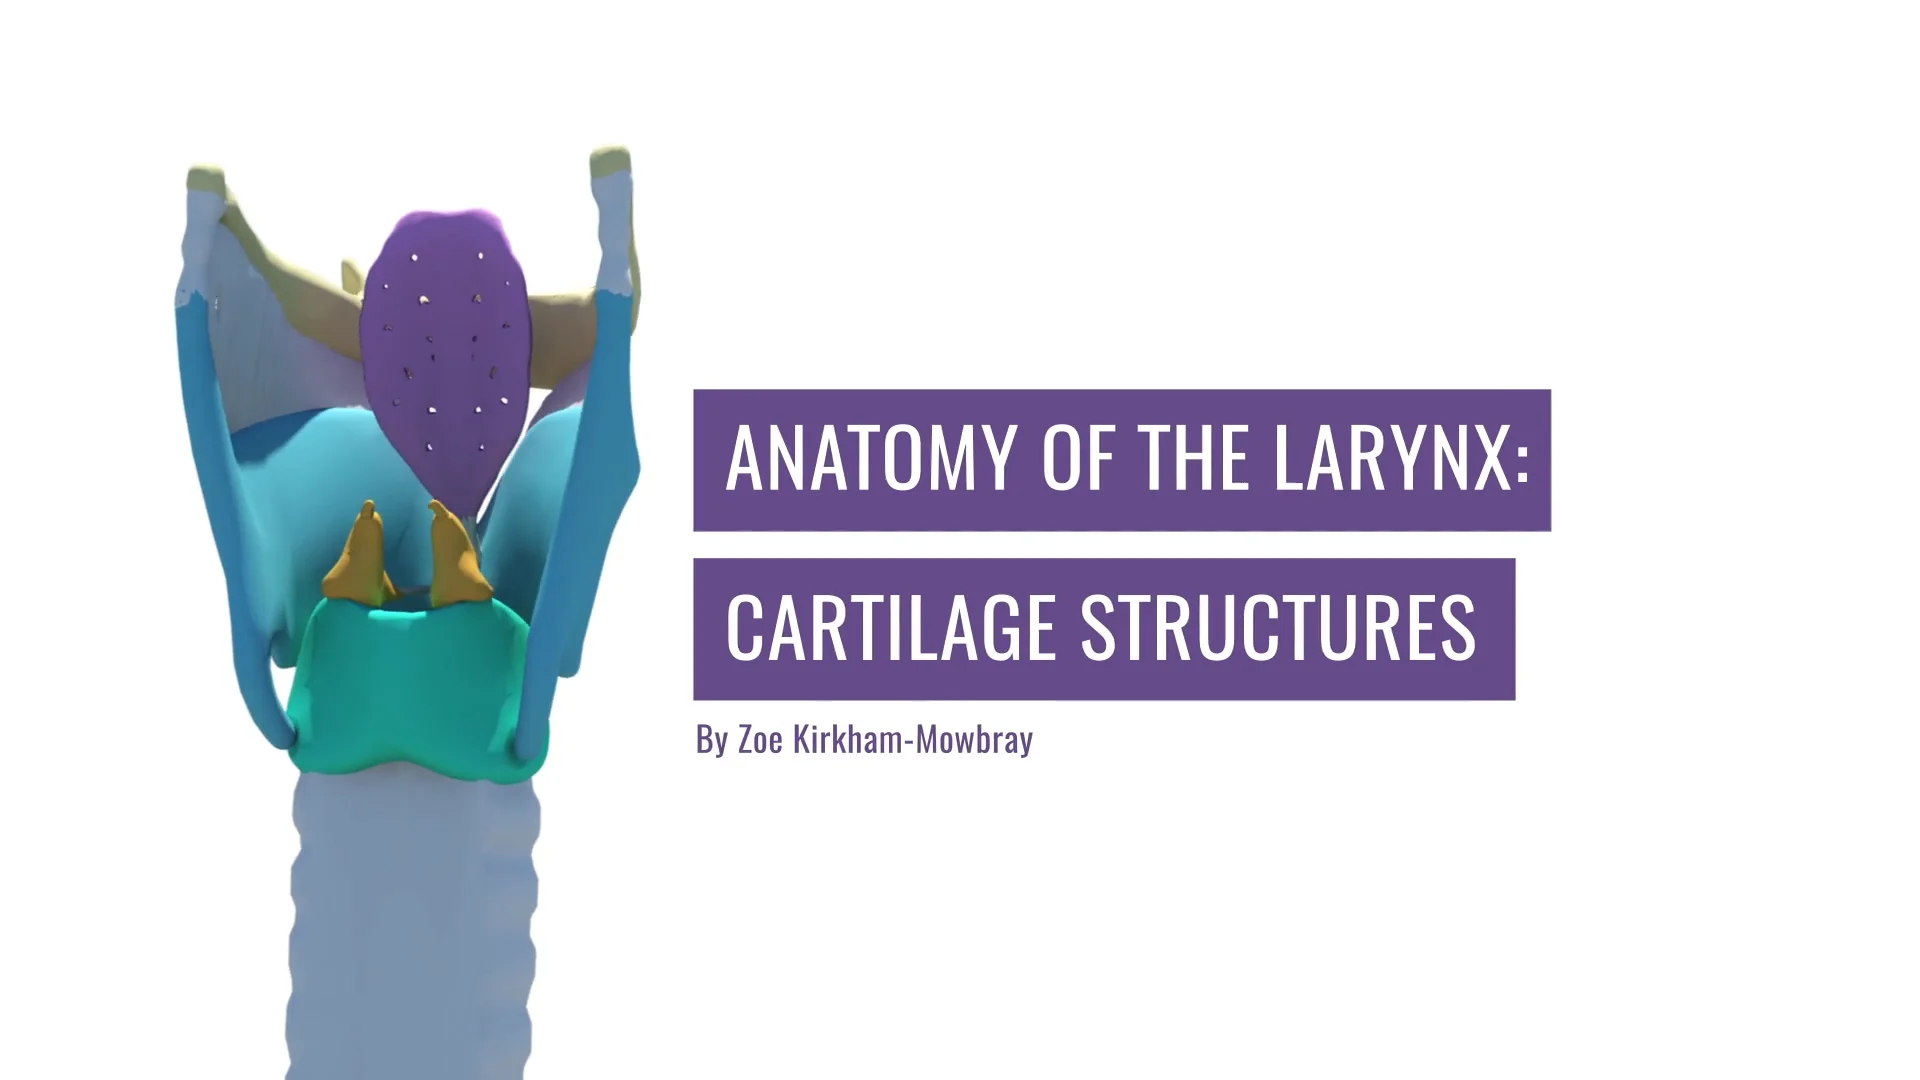 larynx cartilage